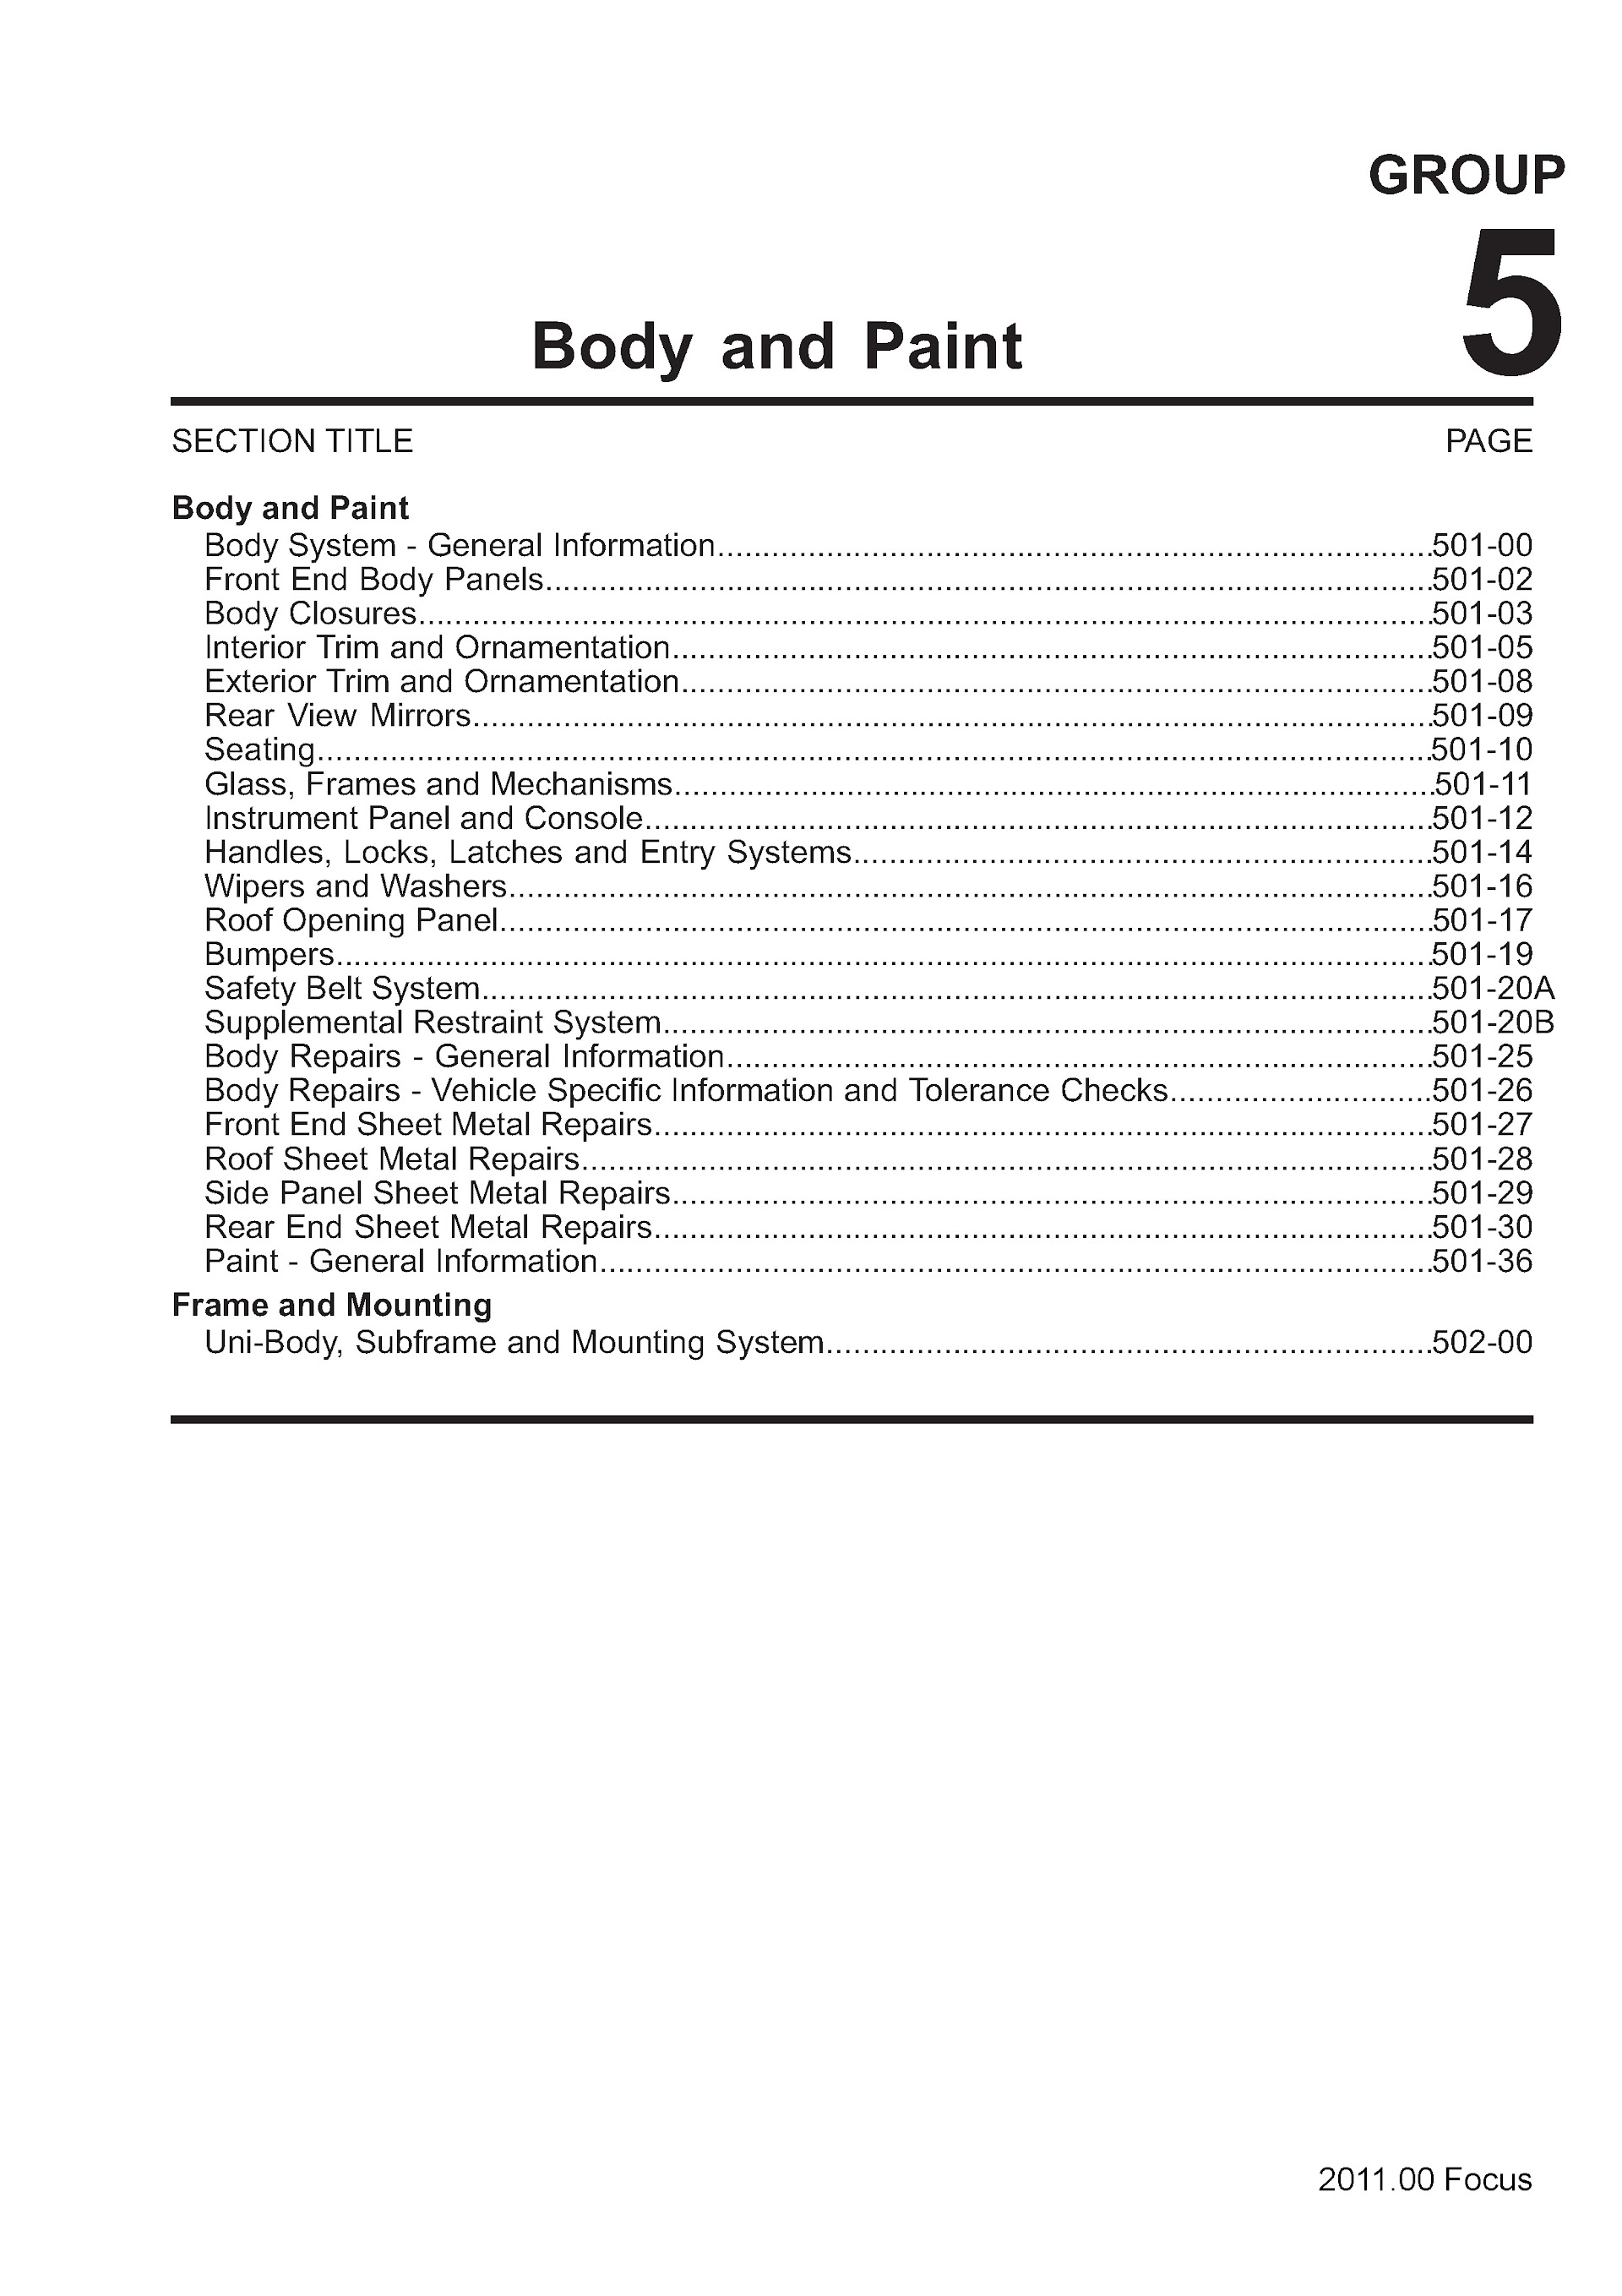 Ford Focus Repair Manual (2012-2013), Body and Paint